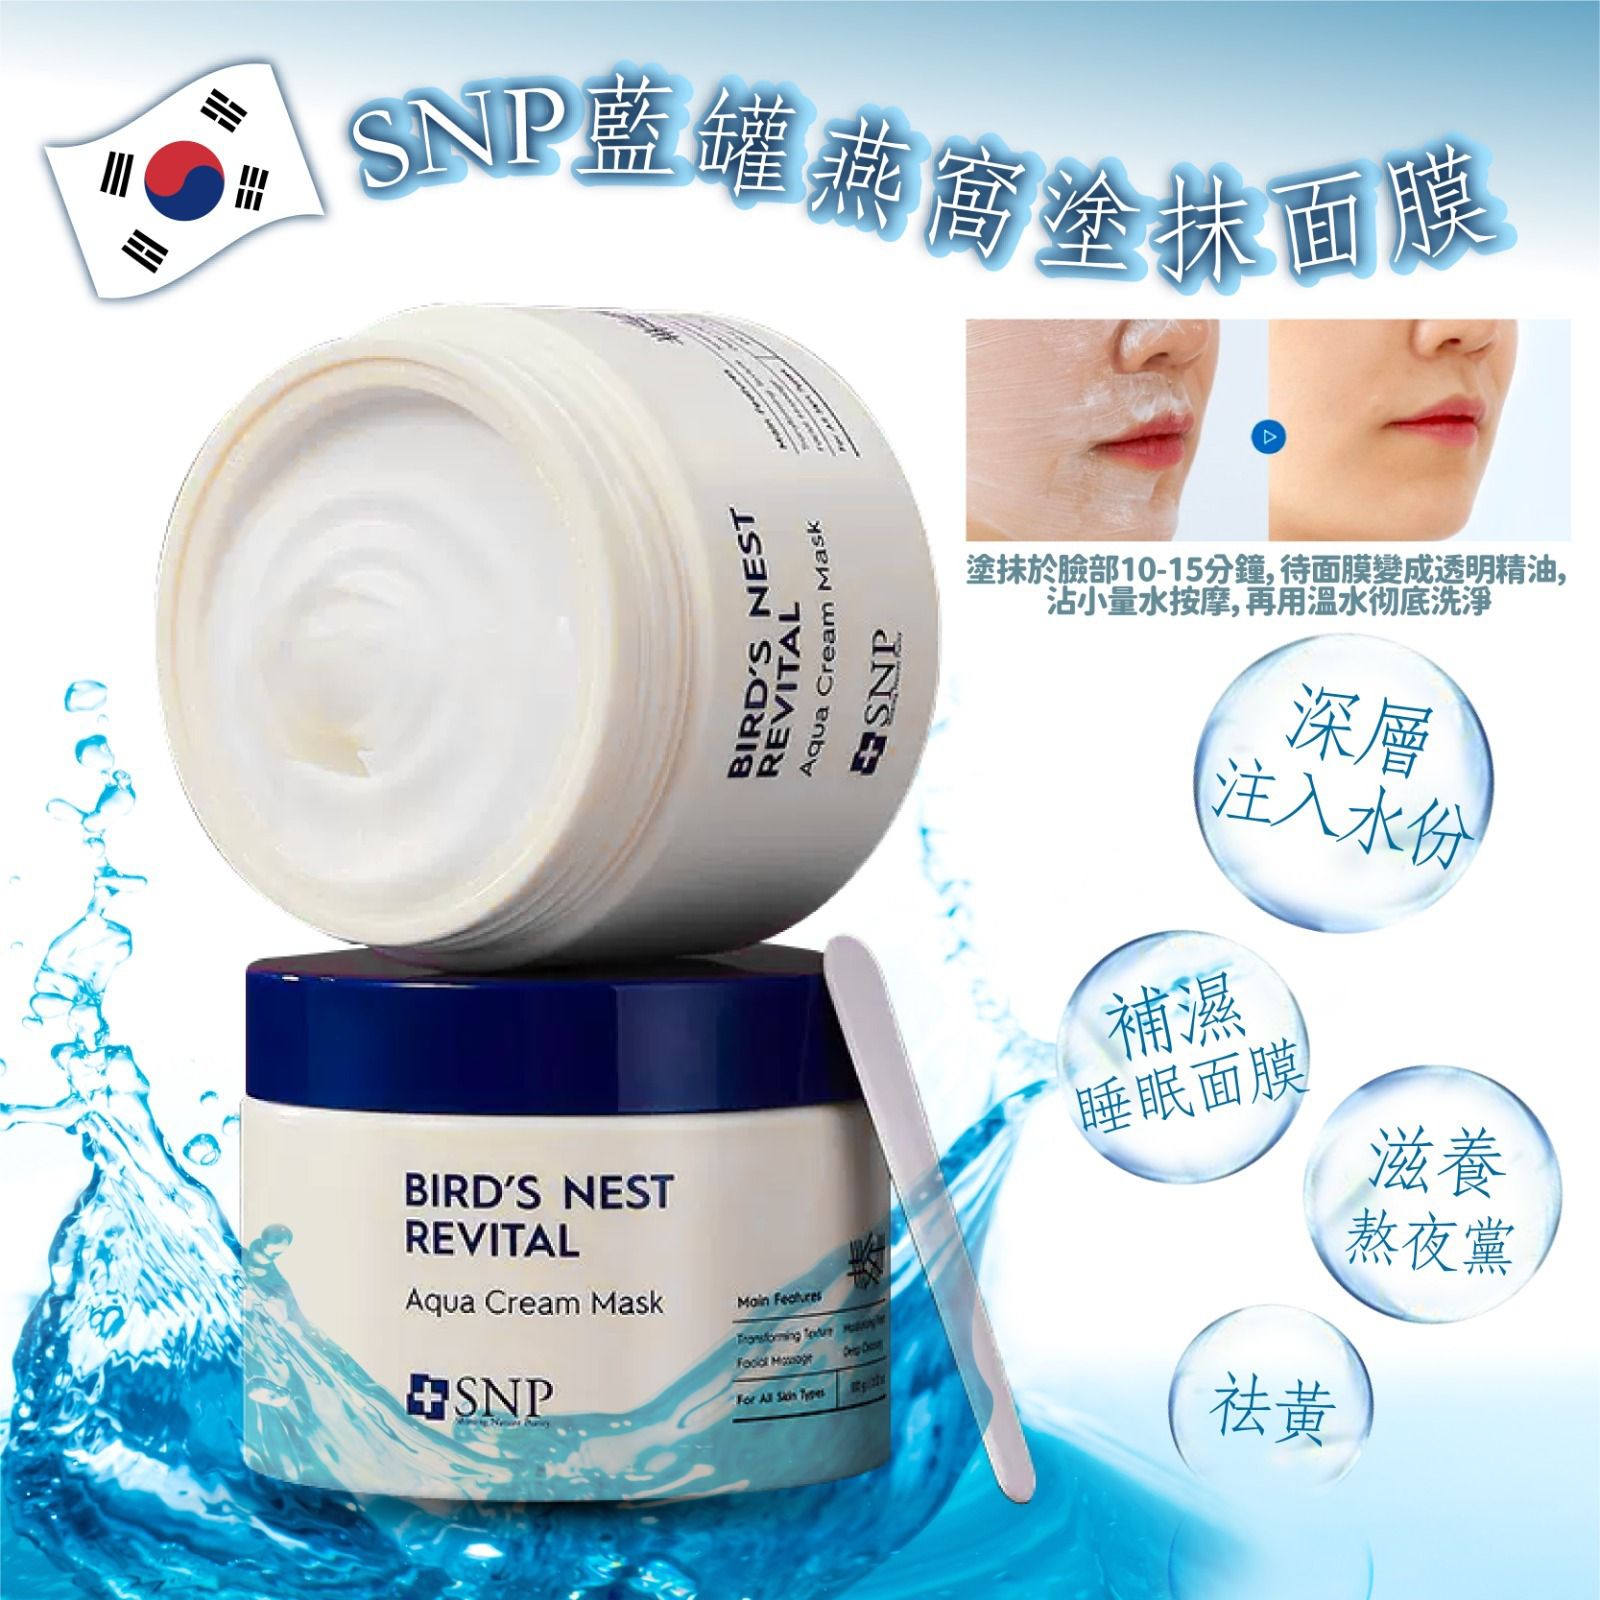 韓國Snp藍罐燕窩塗抹面膜(100g)